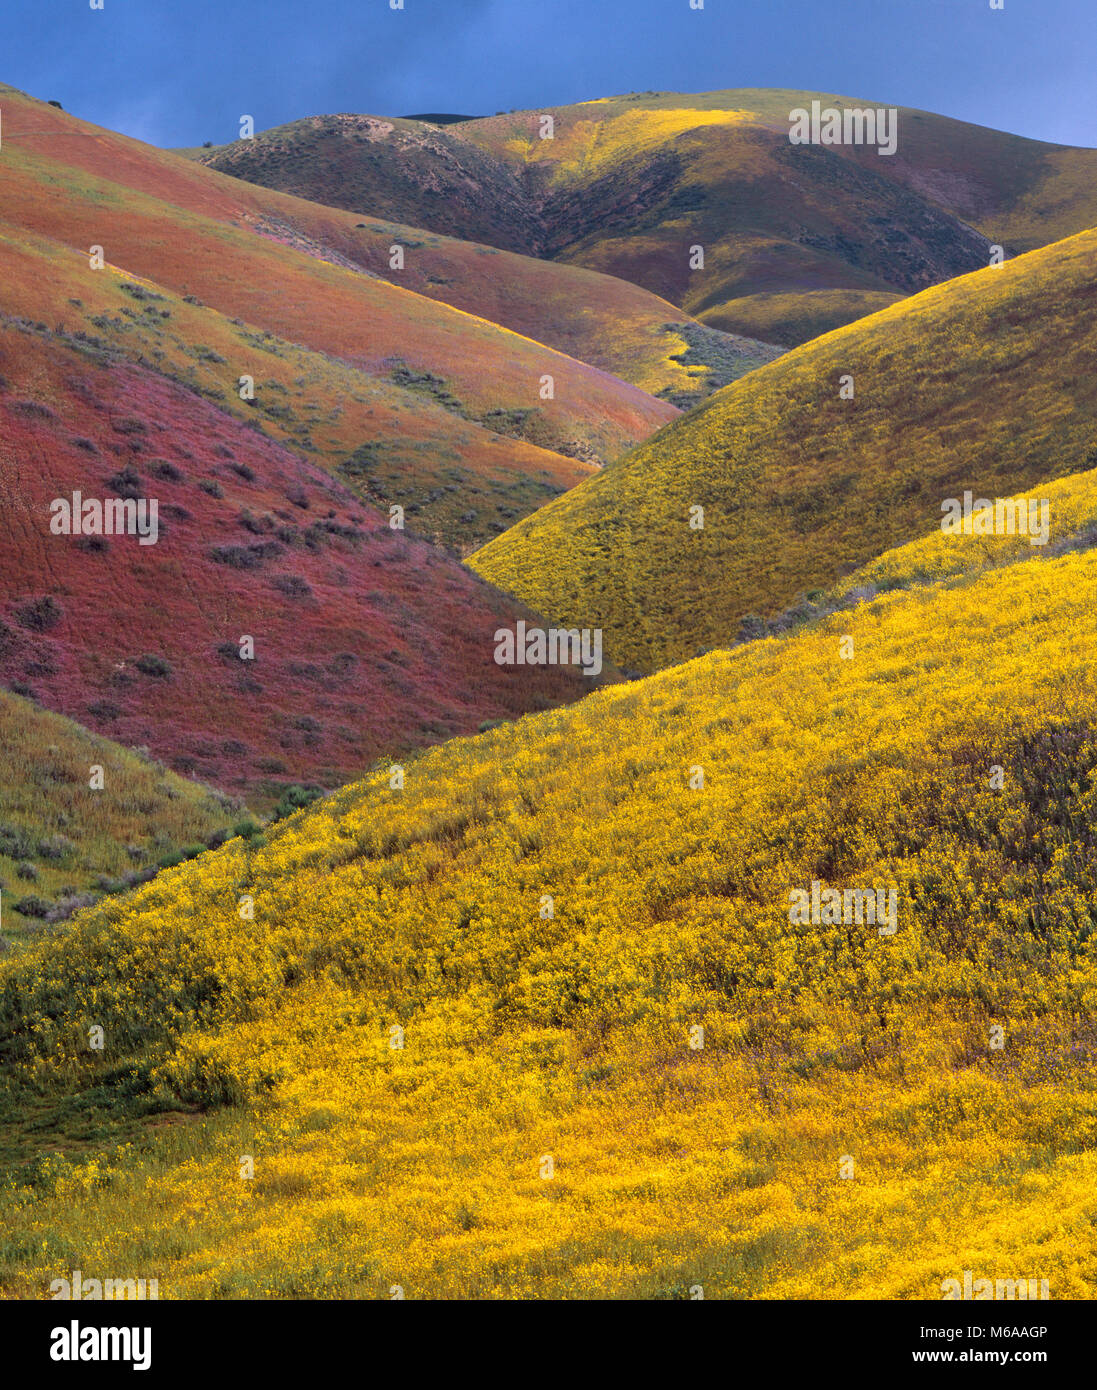 Fleurs sauvages, Tremblor Range, Carrizo Plain National Monument, San Luis Obispo County, Californie Banque D'Images